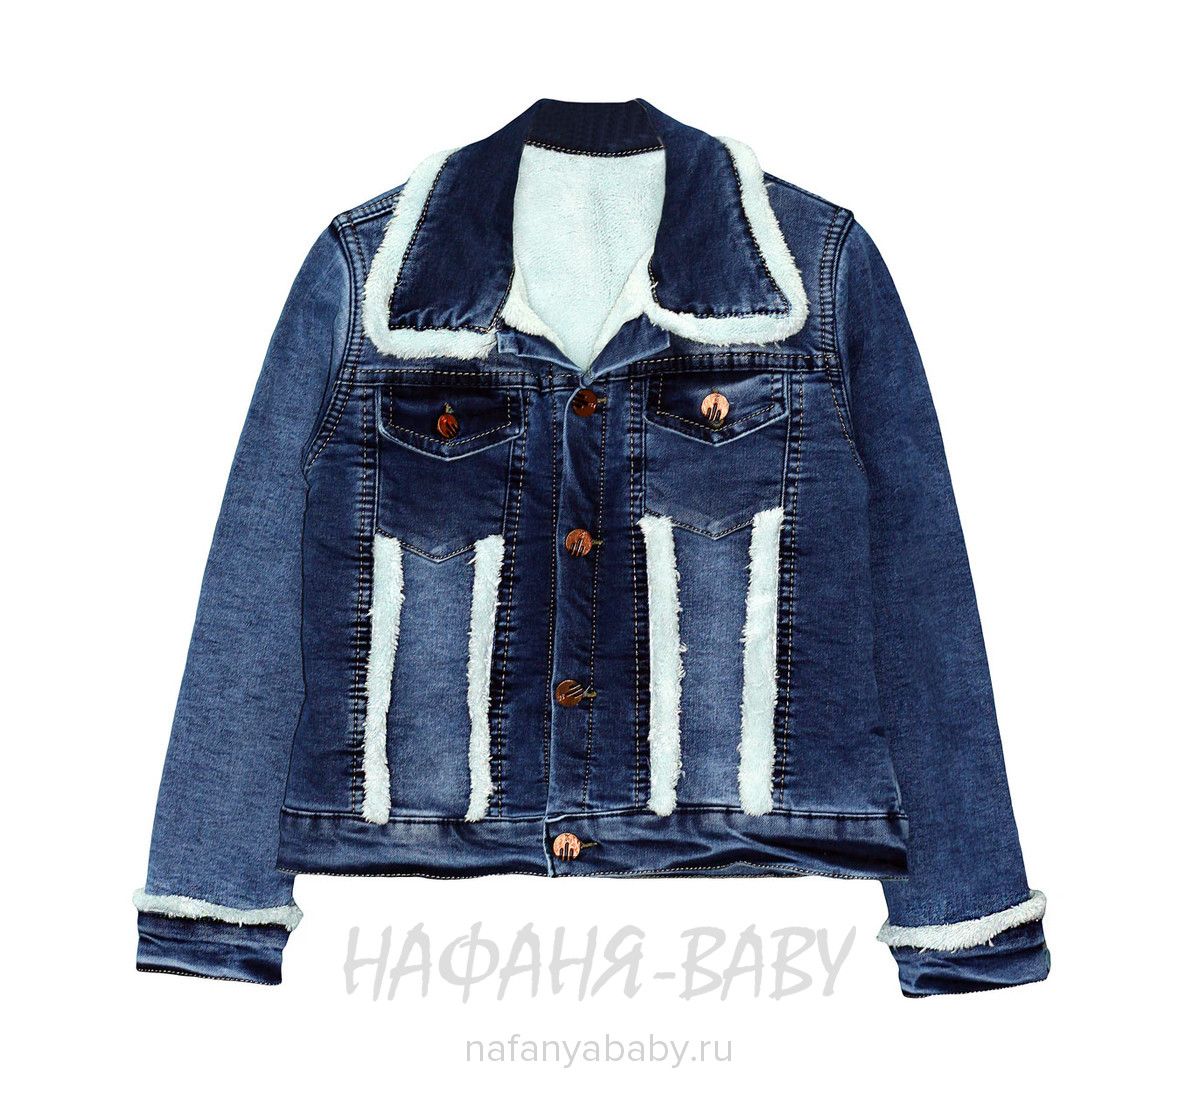 Подростковая теплая джинсовая куртка DAMAS, купить в интернет магазине Нафаня. арт: 5341.